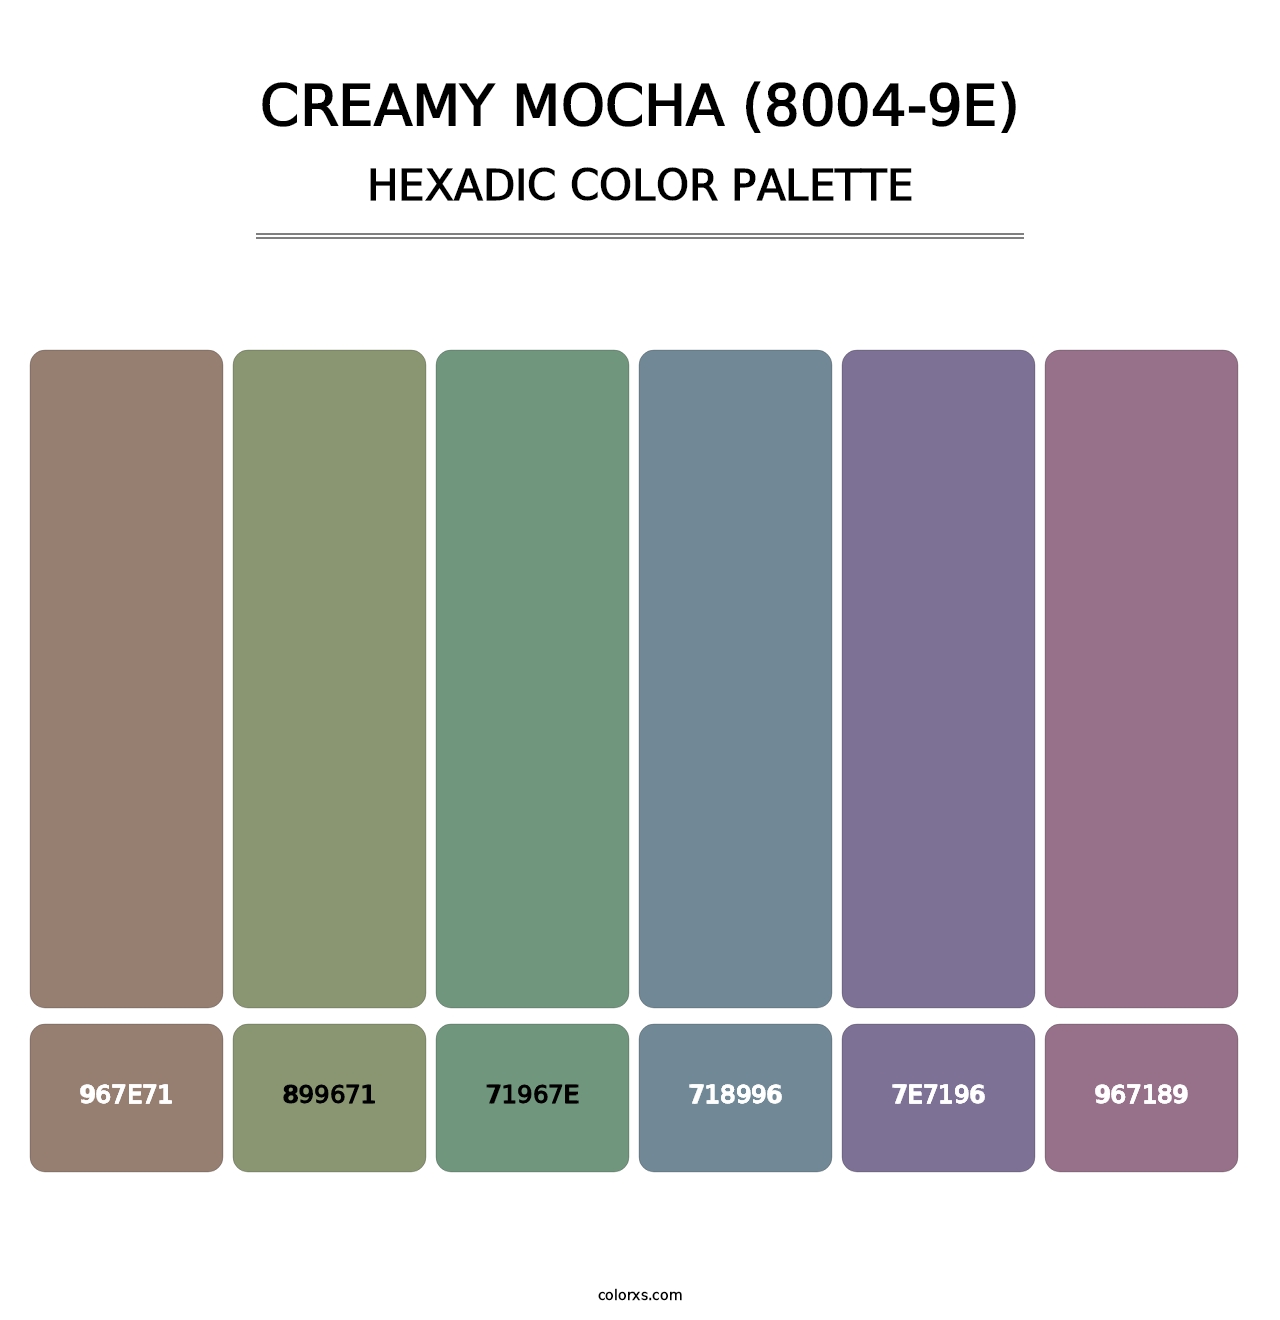 Creamy Mocha (8004-9E) - Hexadic Color Palette